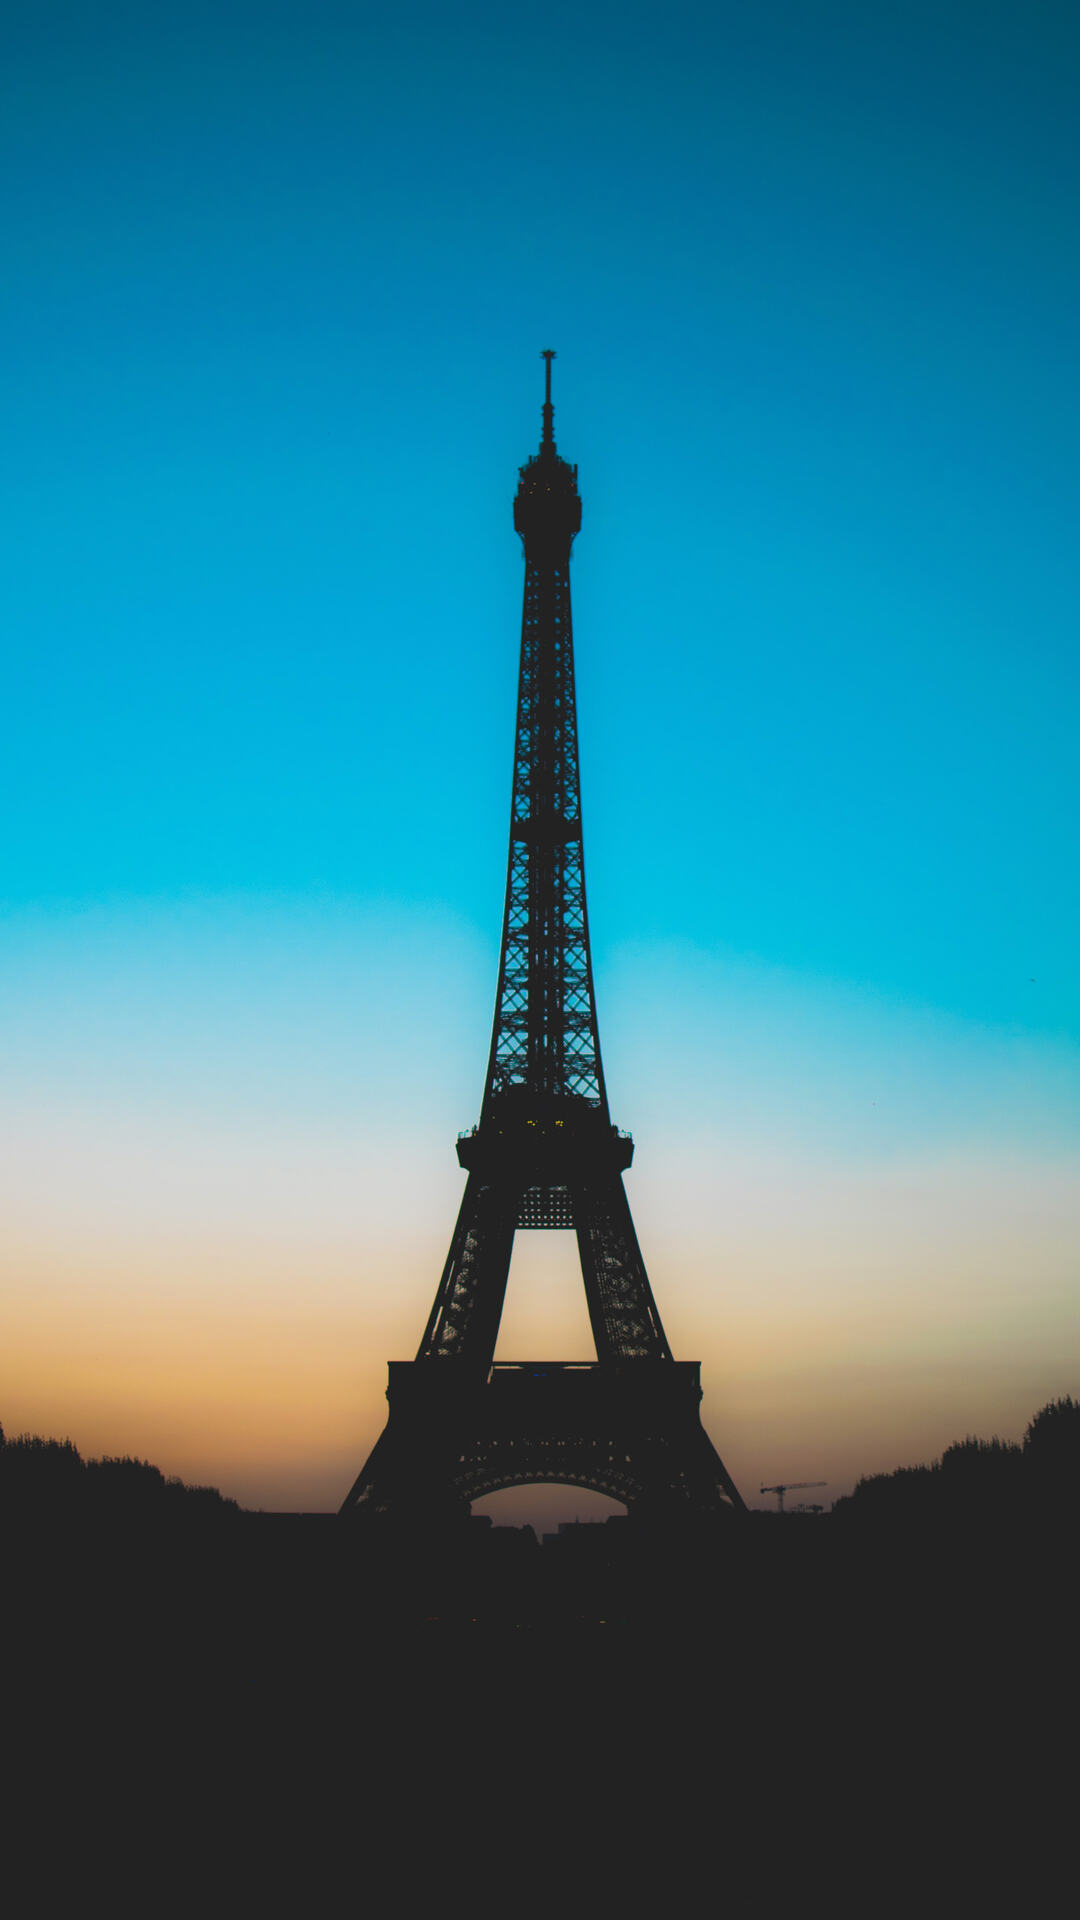 来自浪漫城市法国巴黎的埃菲尔铁塔高清摄影手机壁纸推荐下载套图1